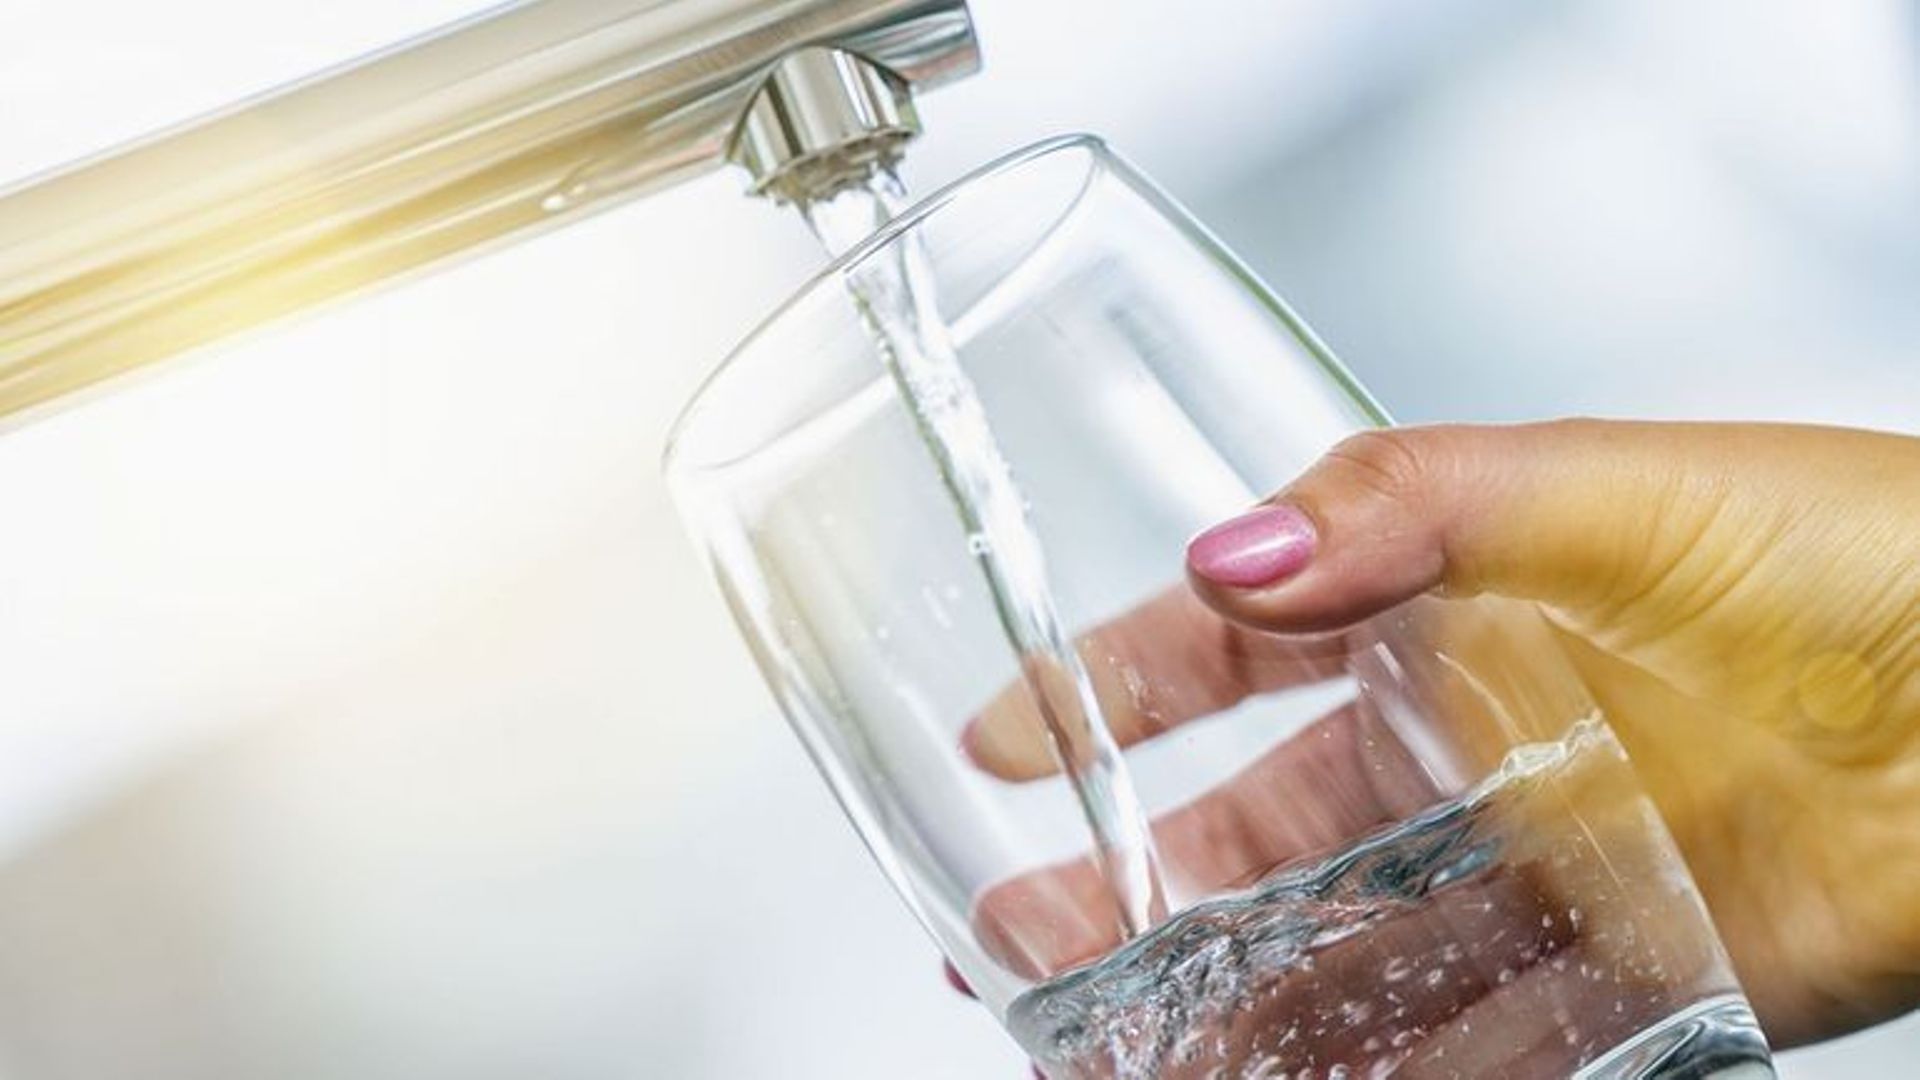 Bruxelles : les coupures d’eau interdites pour les usagers domestiques, à partir de janvier